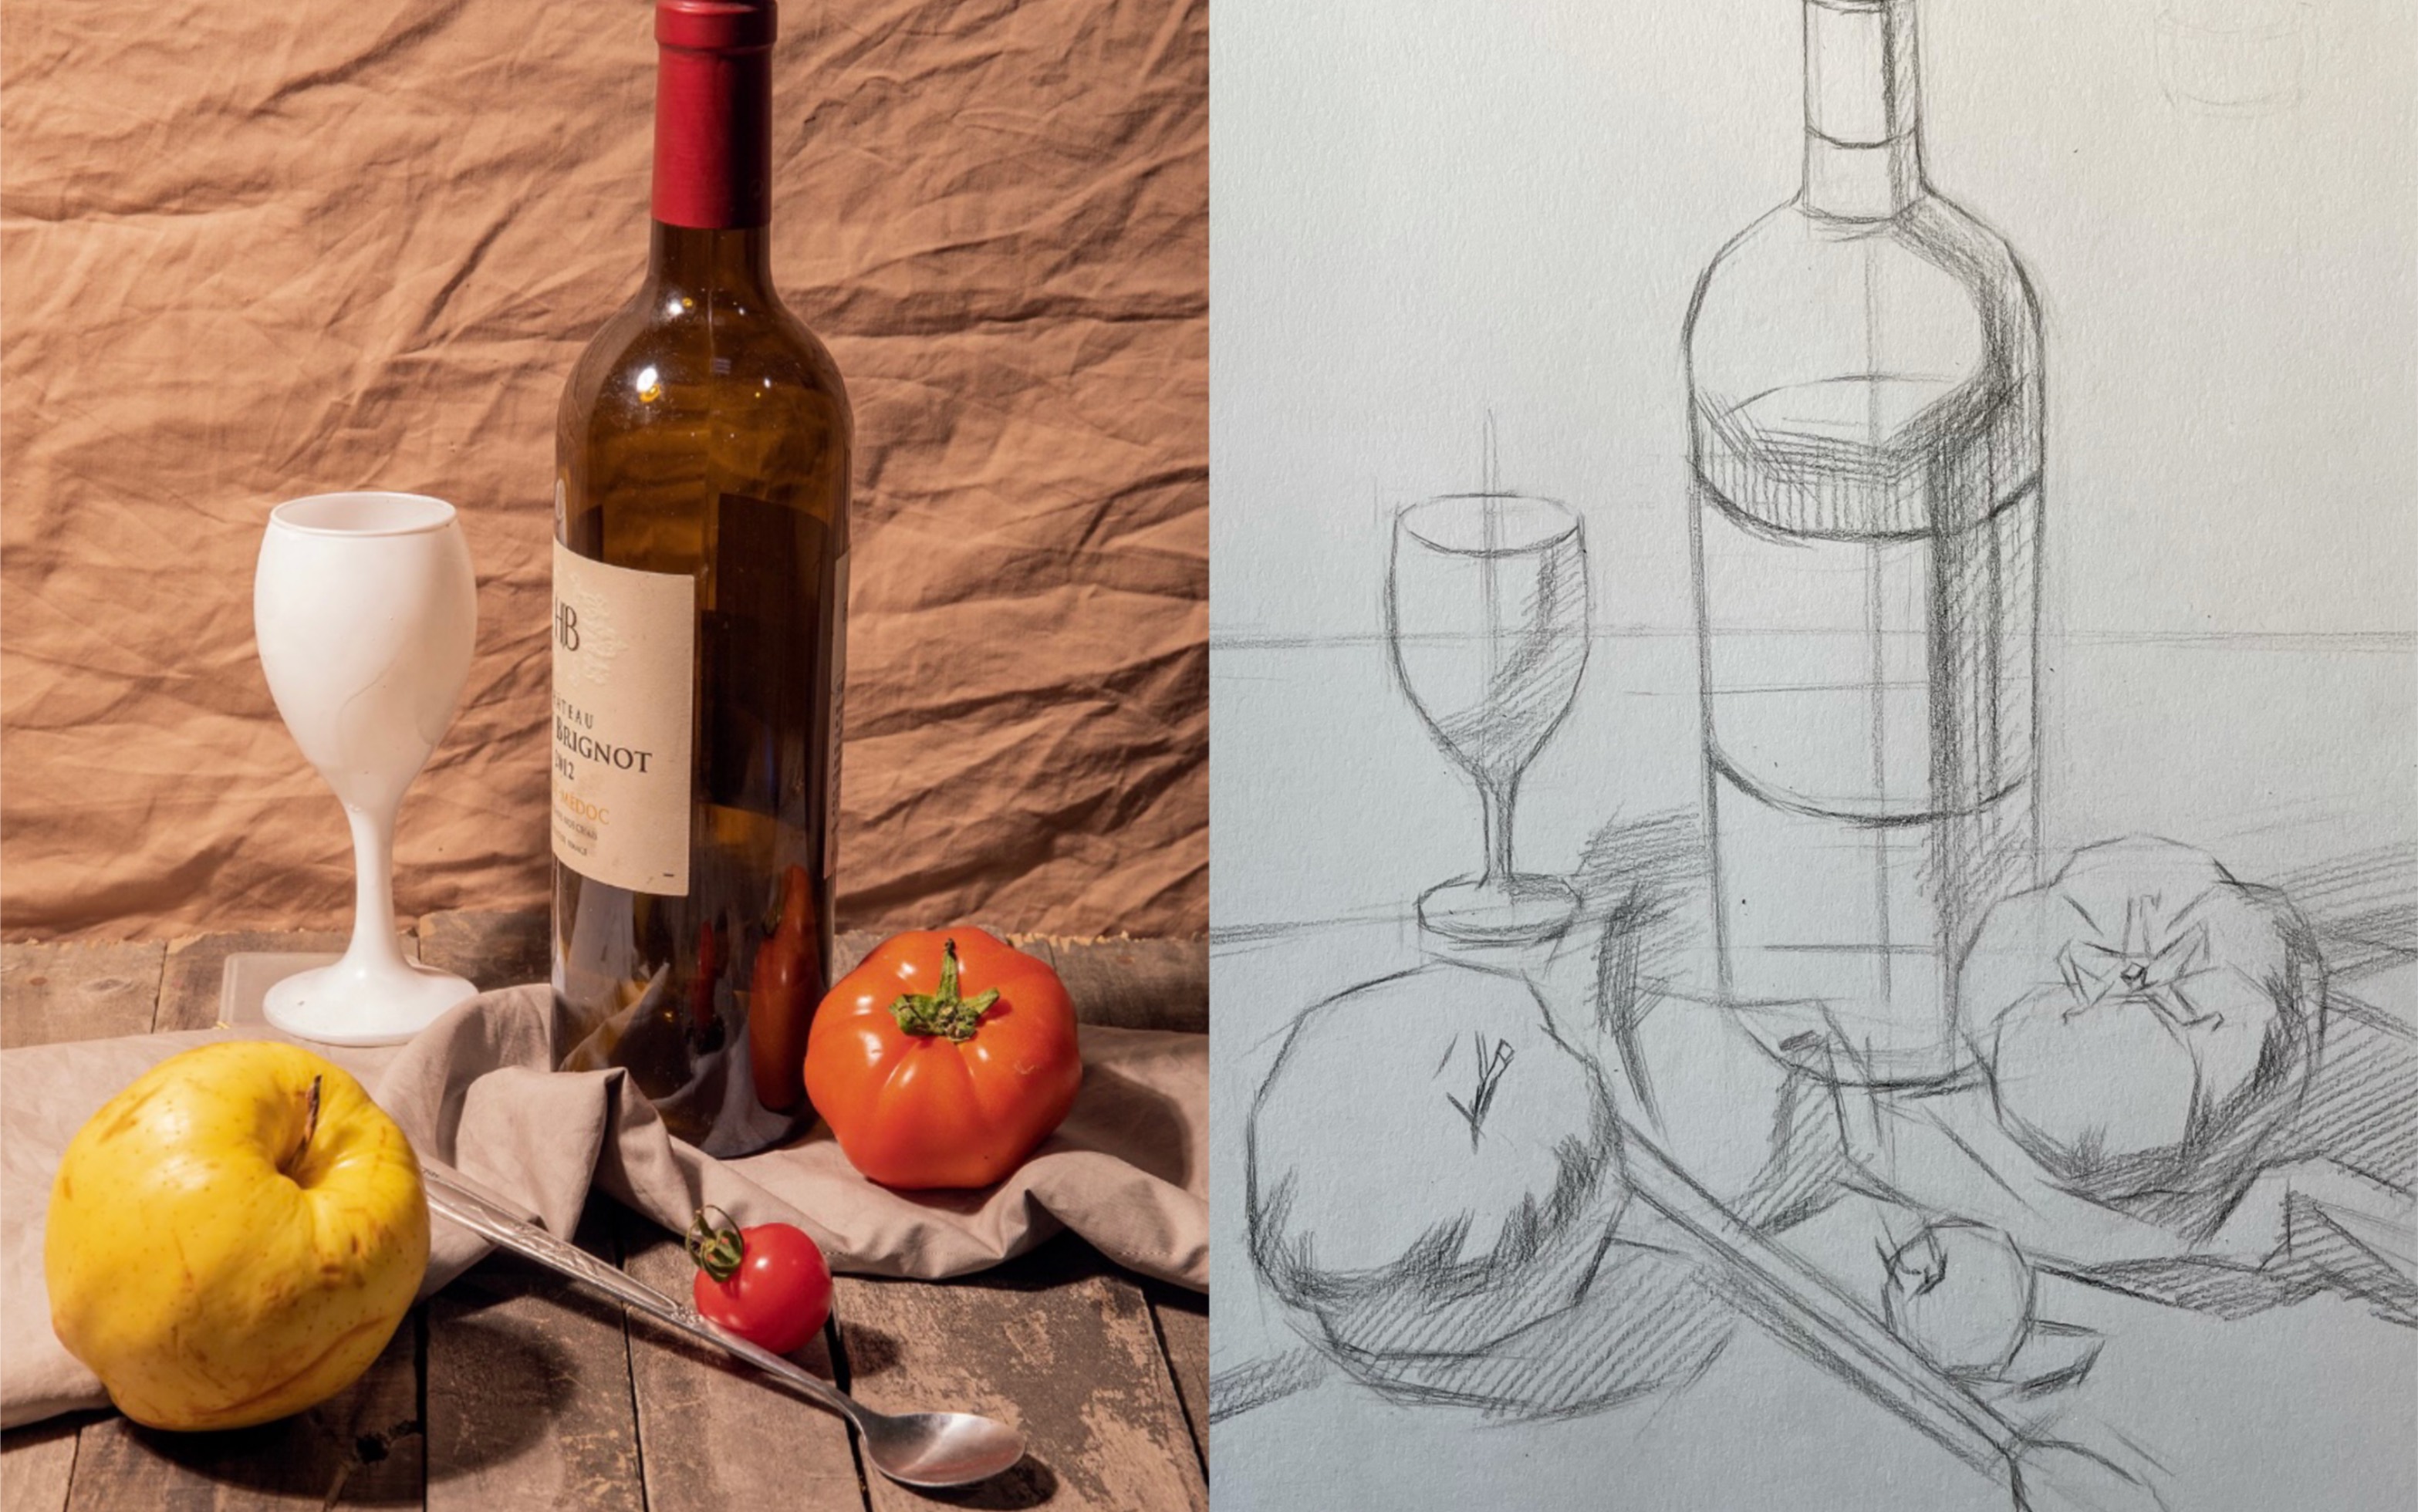 素描画红酒瓶图片步骤图片